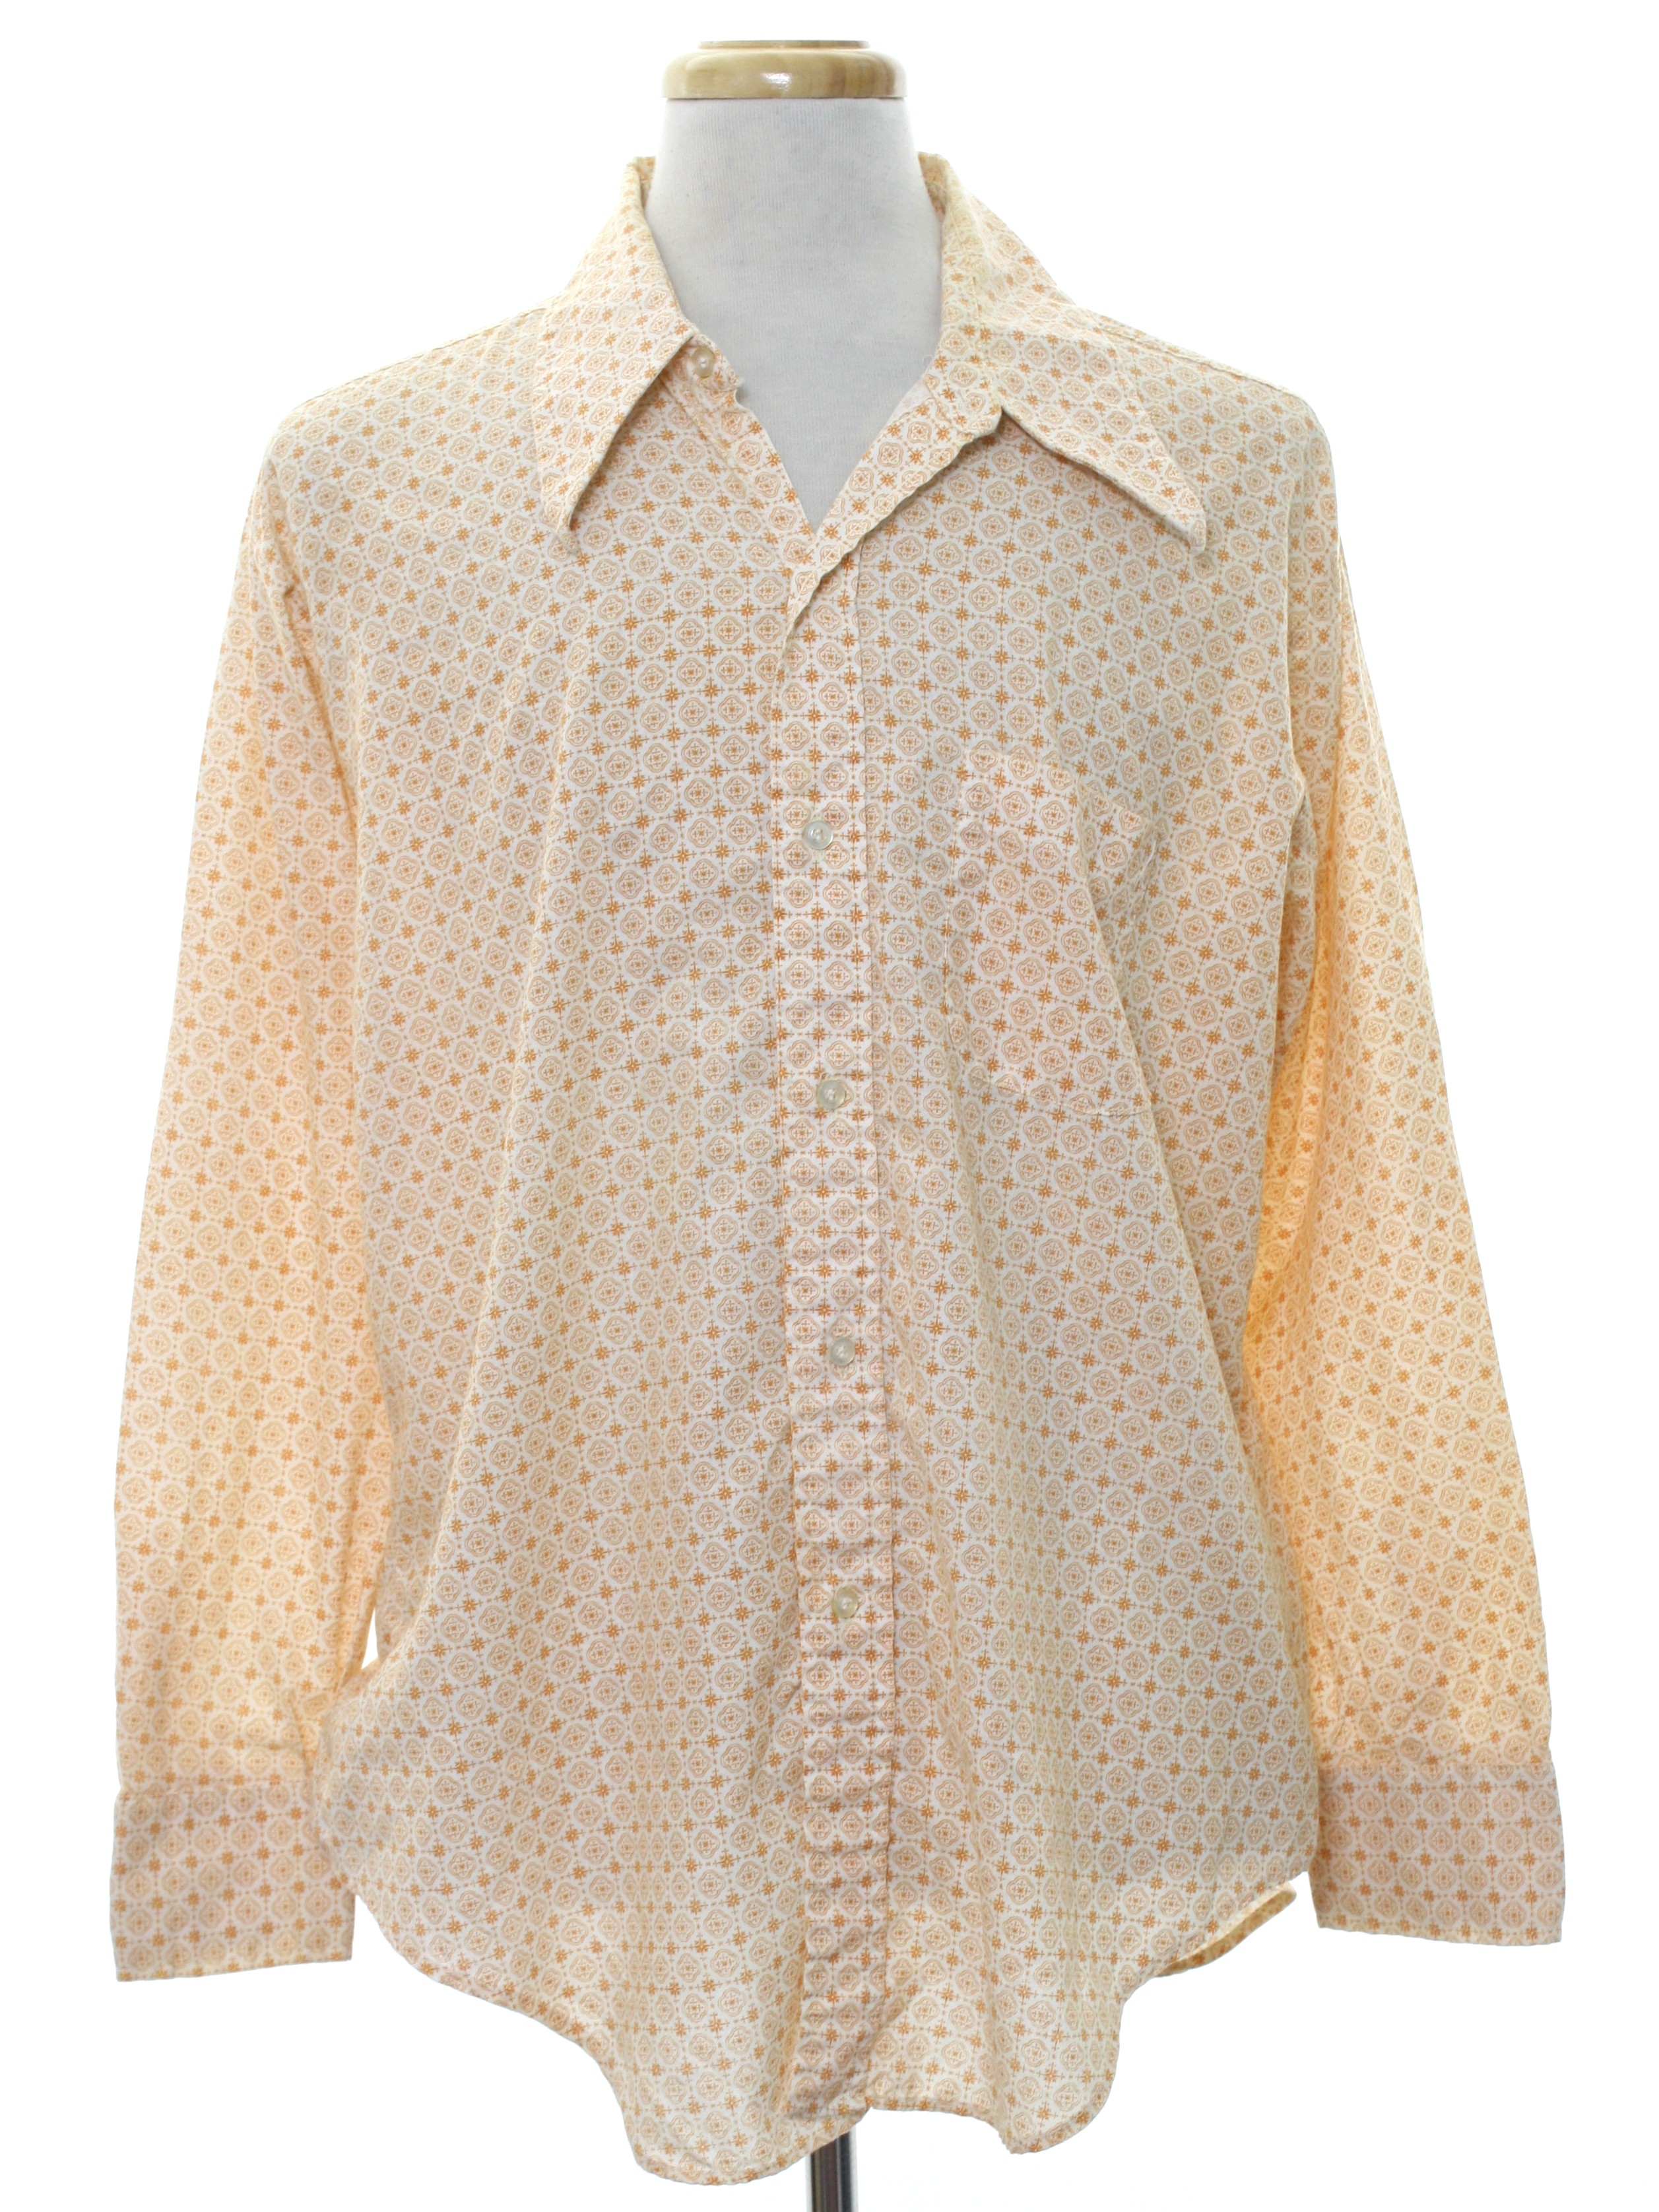 Retro 1970s Shirt: 70s -Fashion Classics- Mens white background ...